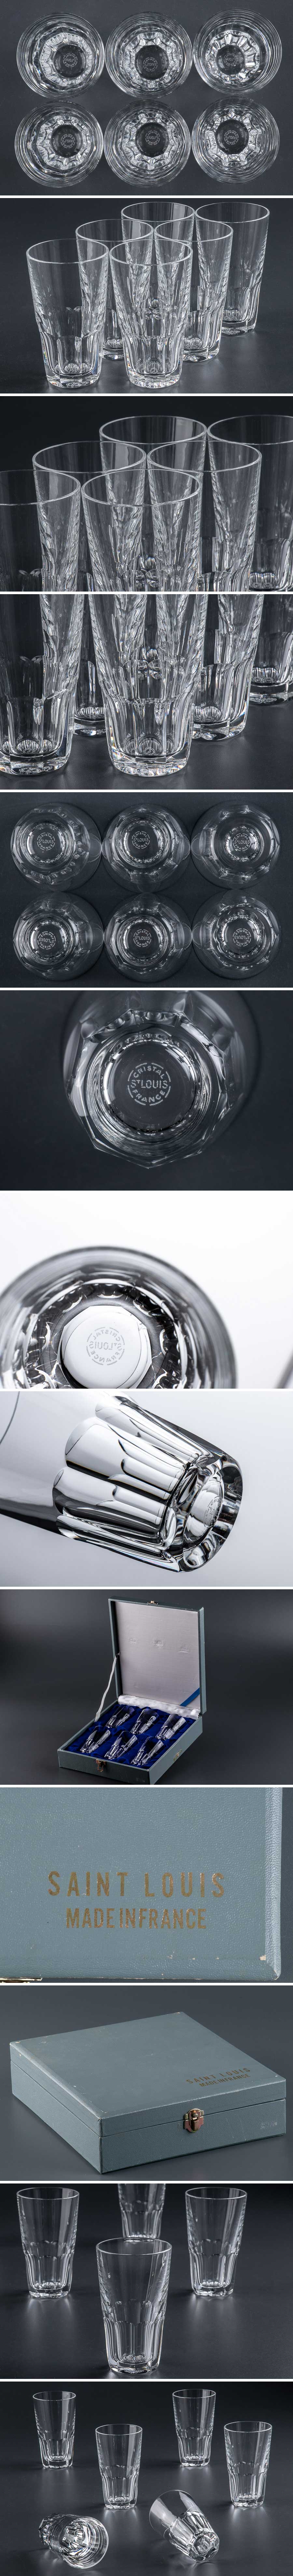 保証商品『 Saint-Louis サンルイ クリスタル カットガラス タンブラー グラス 6客 フランス 箱付 9357 』 洋食器 テーブルウェア ブランド クリスタルガラス